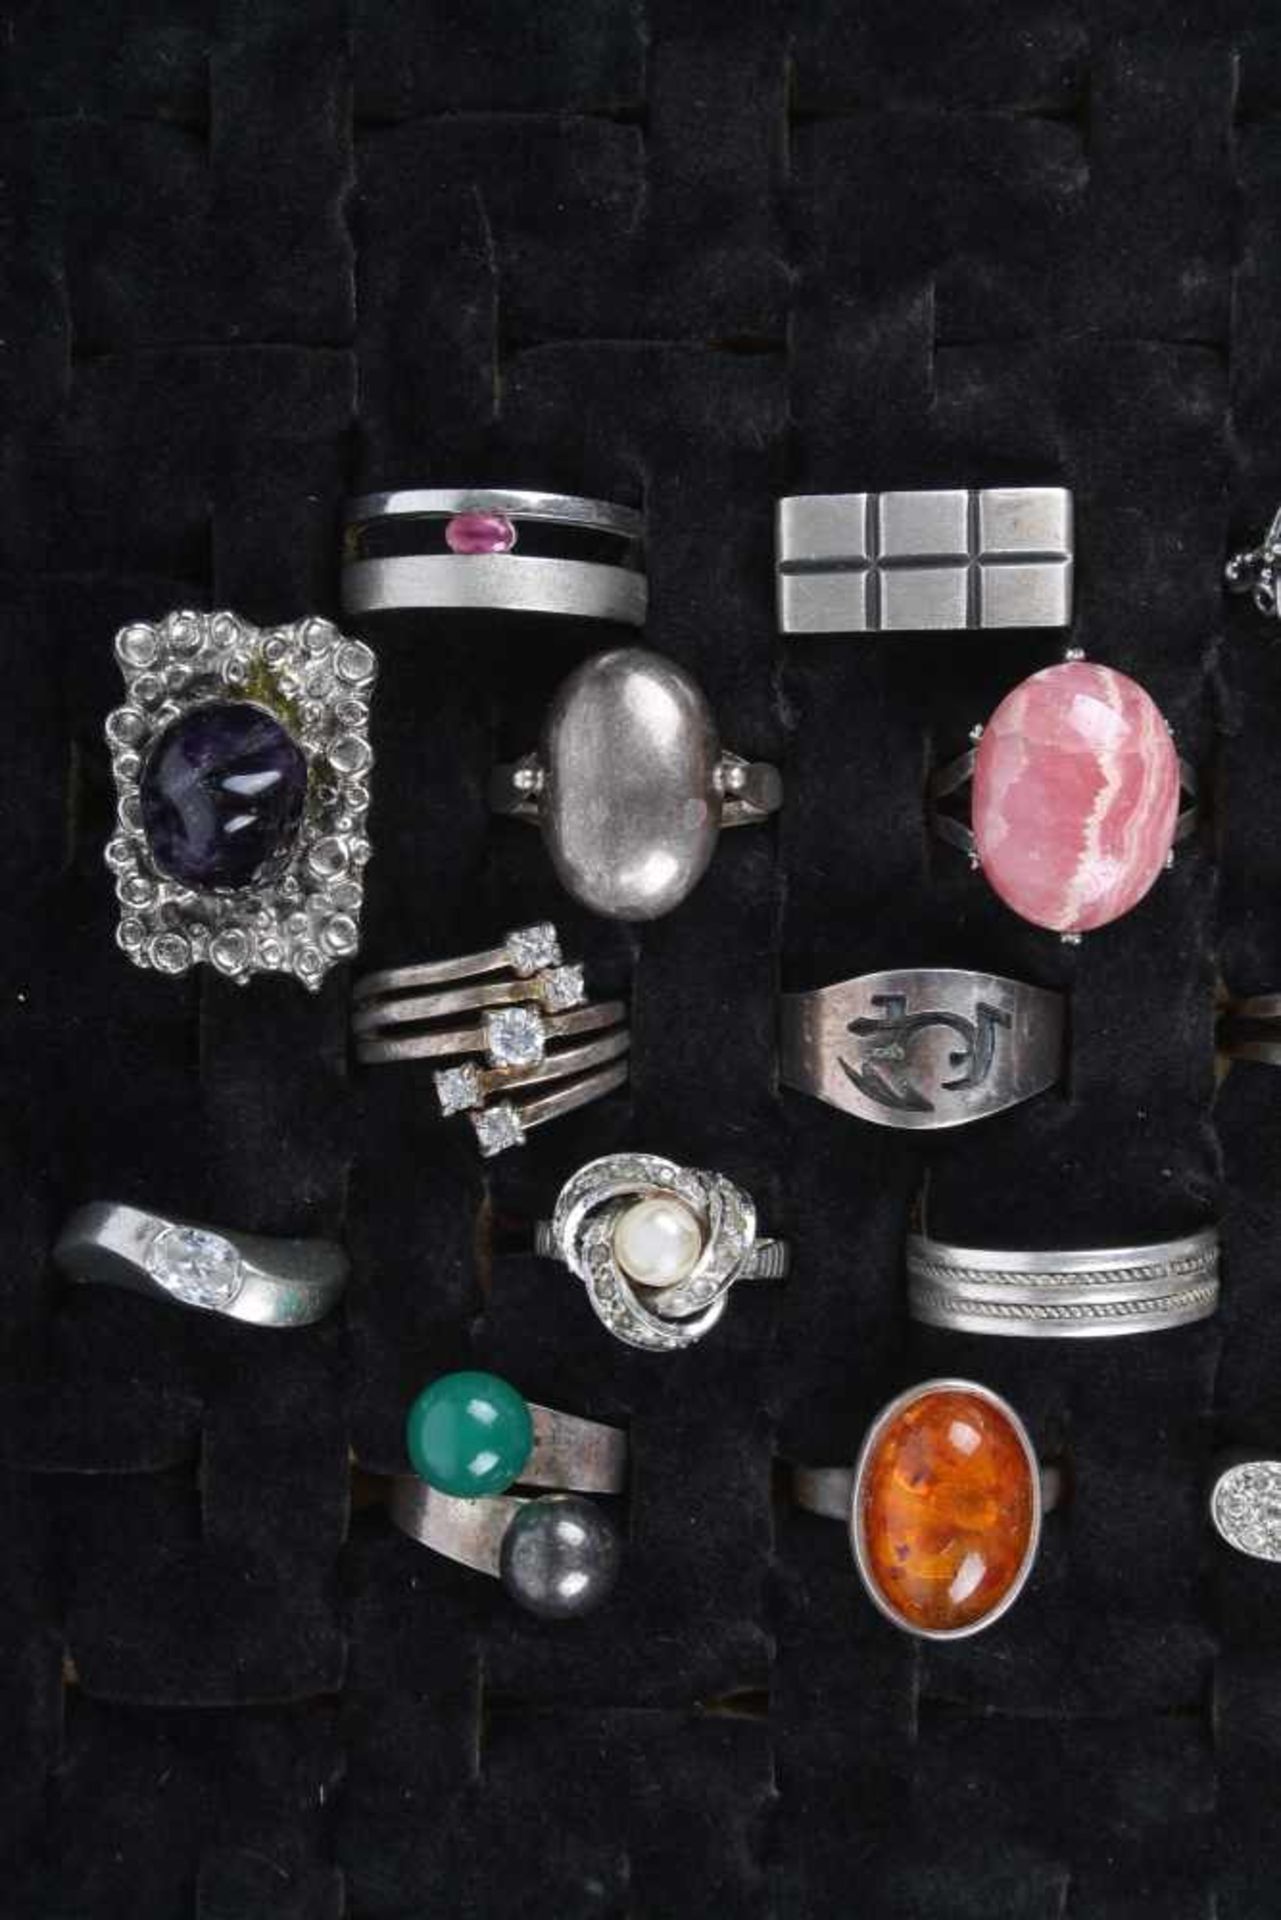 20 Silberringe, silver rings, - Bild 2 aus 3